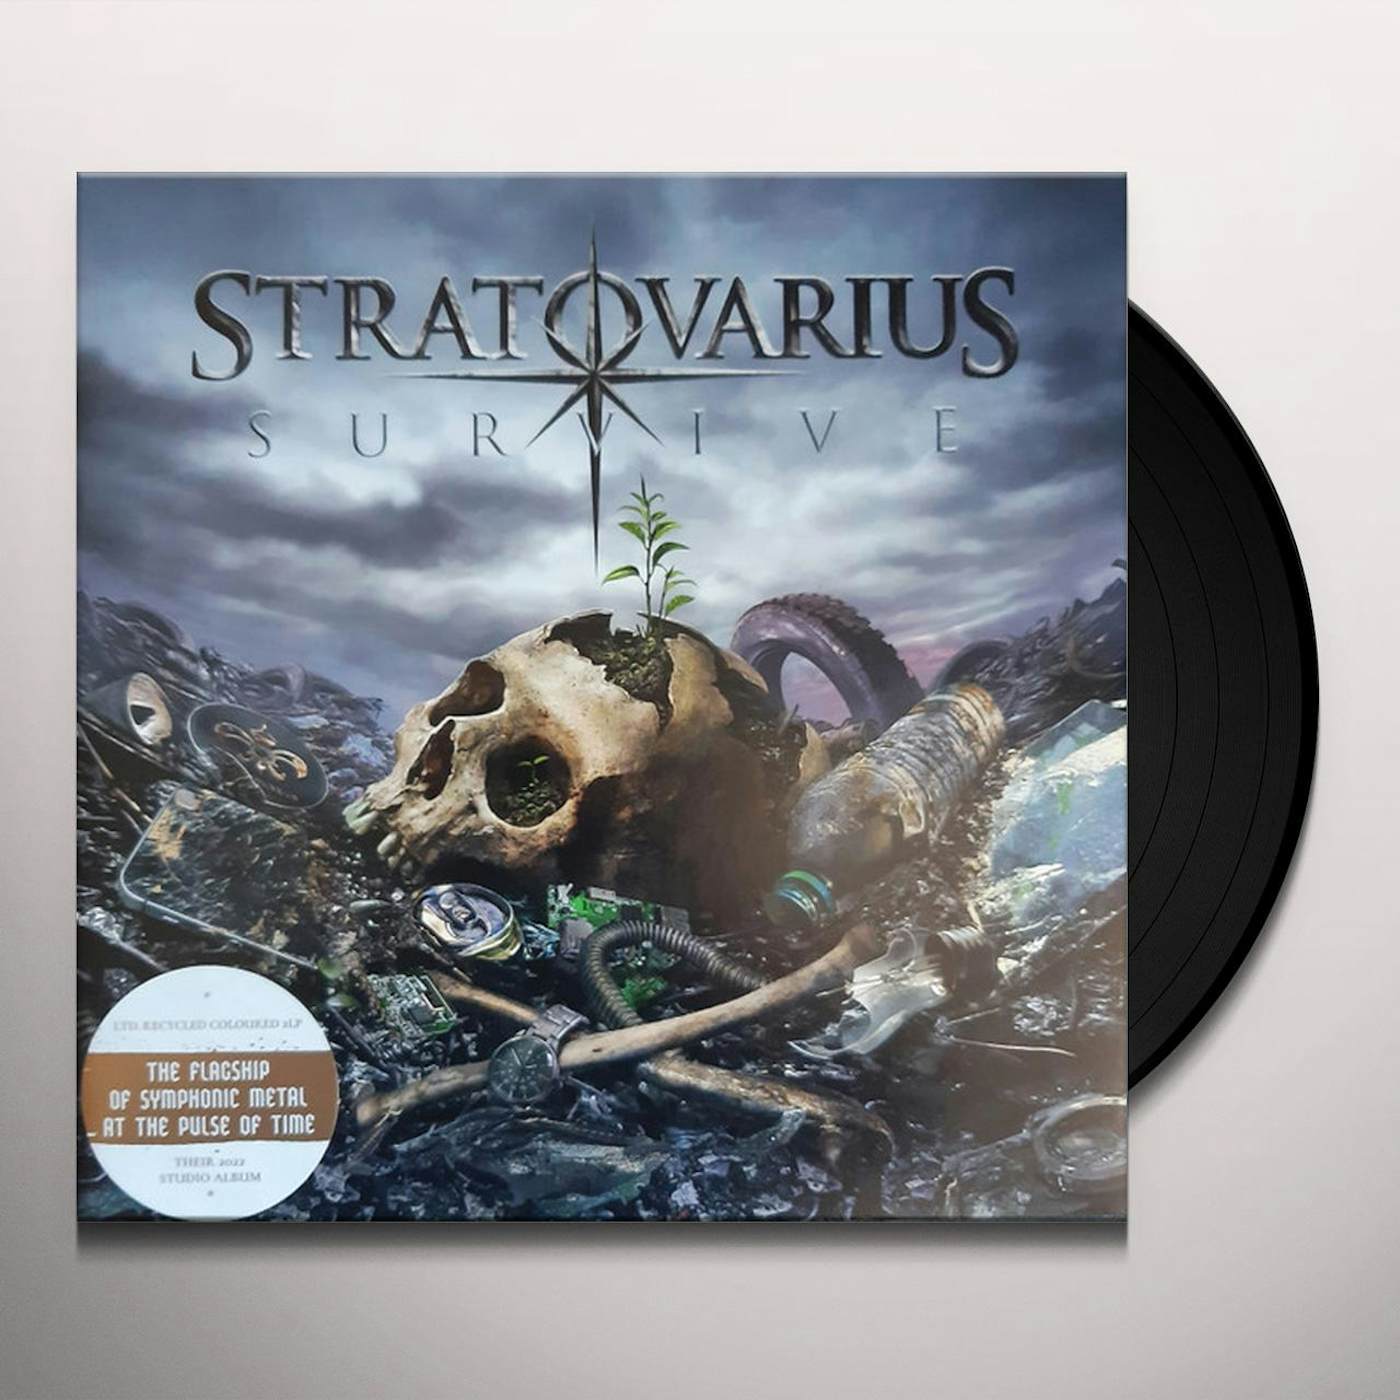 Polaris  Álbum de Stratovarius 